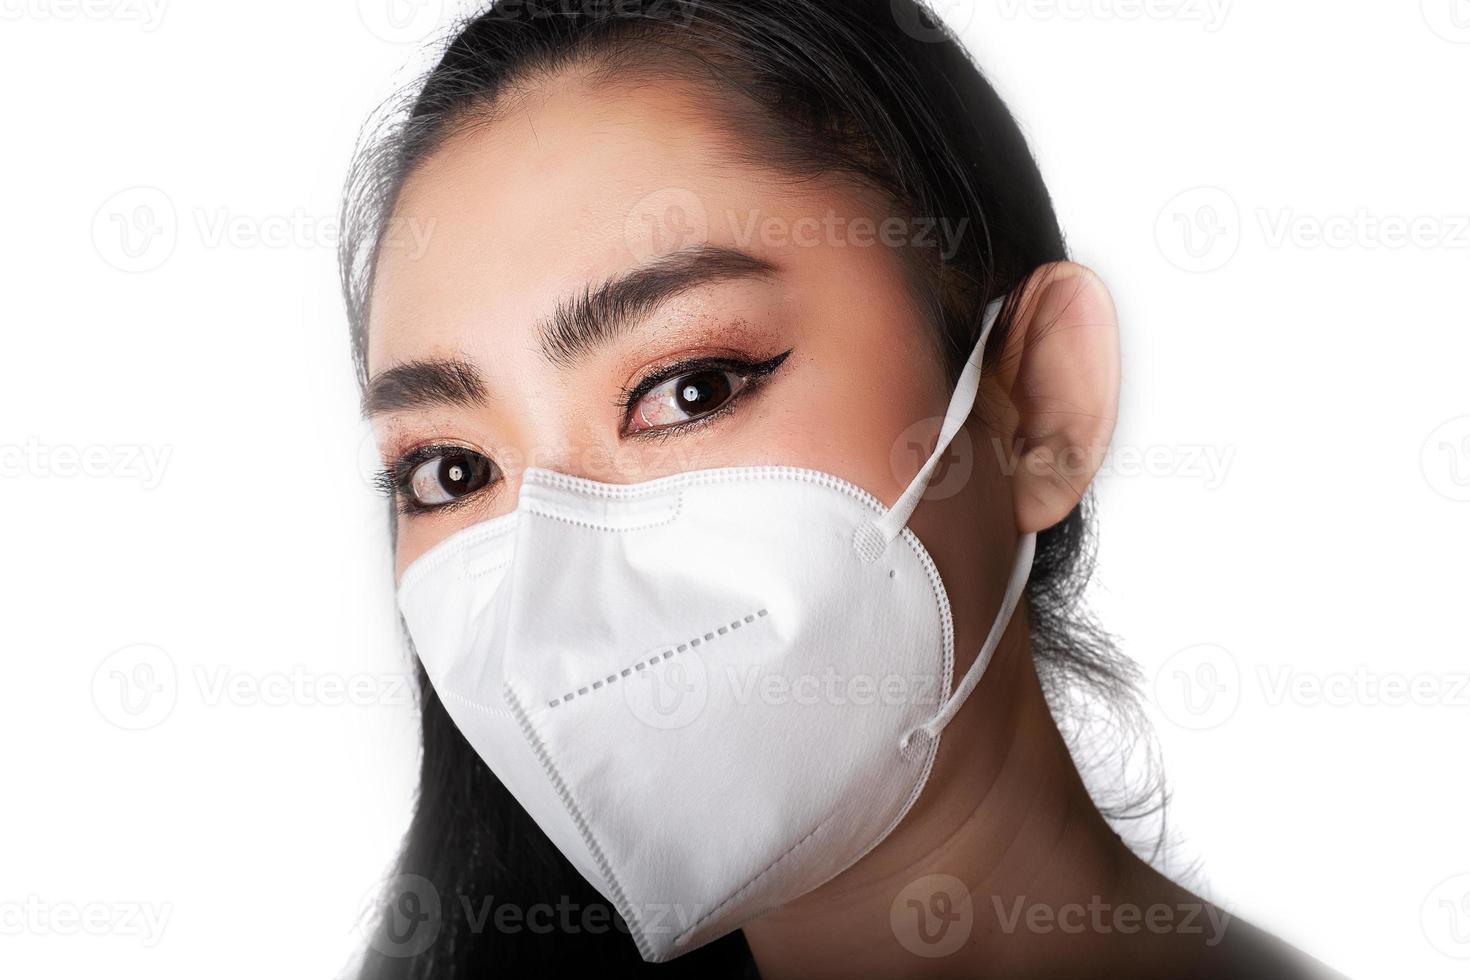 close-up de uma mulher colocando uma máscara respiratória n95 para se proteger de doenças respiratórias transportadas pelo ar como a gripe covid-19 coronavírus ebola pm2.5 poeira e poluição foto